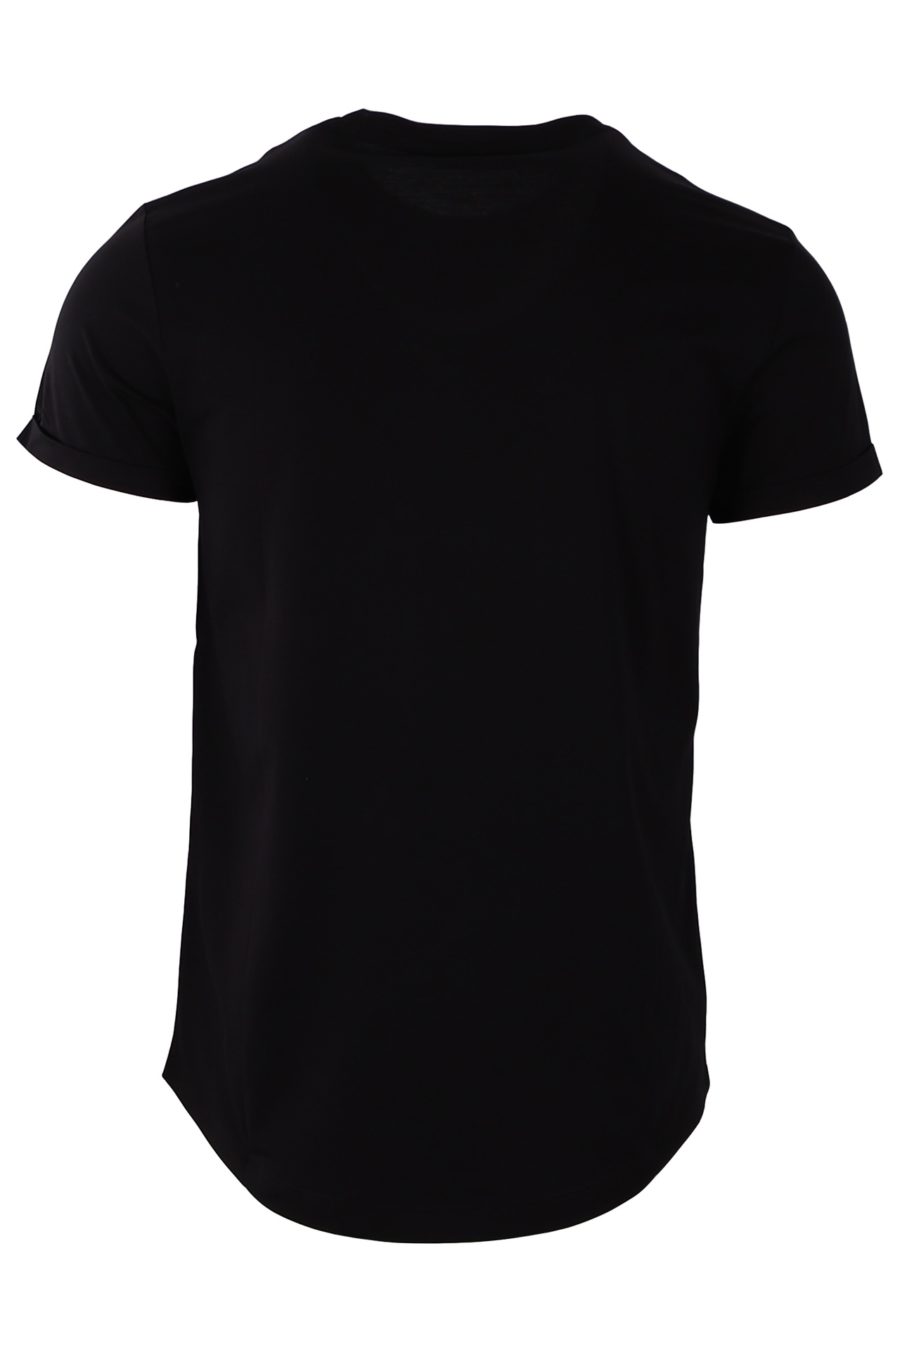 T-shirt Balmain velours noir logo rond - 6ece680c74232d5e88ea3dd02607499af81dfe2e